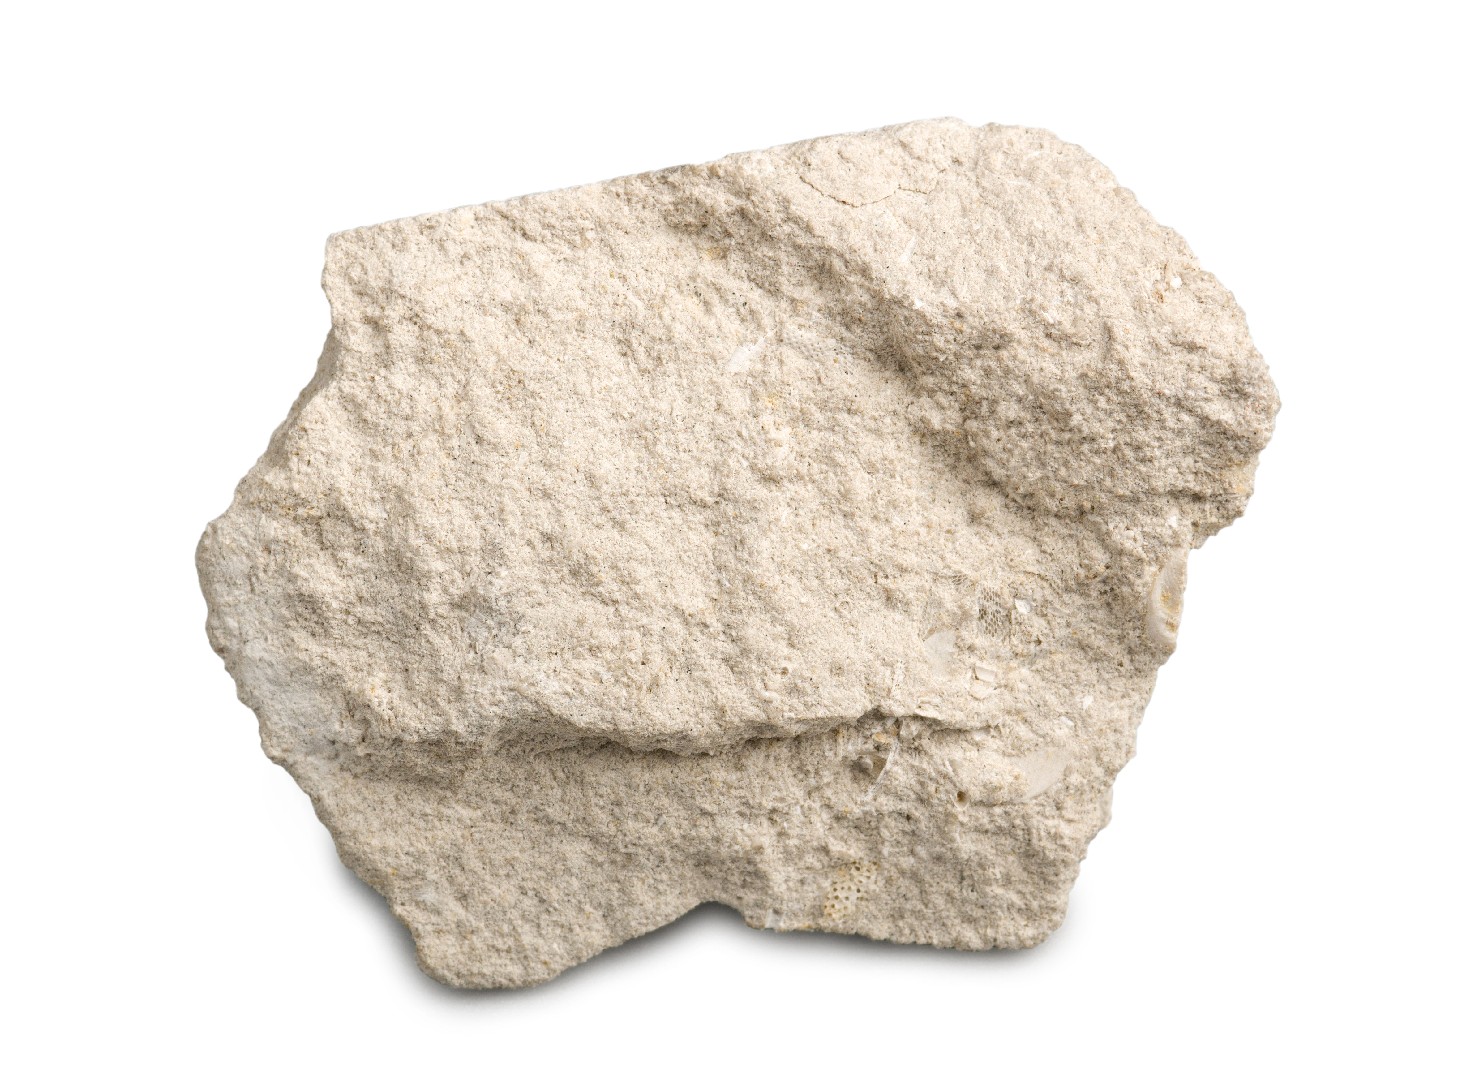 Calcare (Limestone)